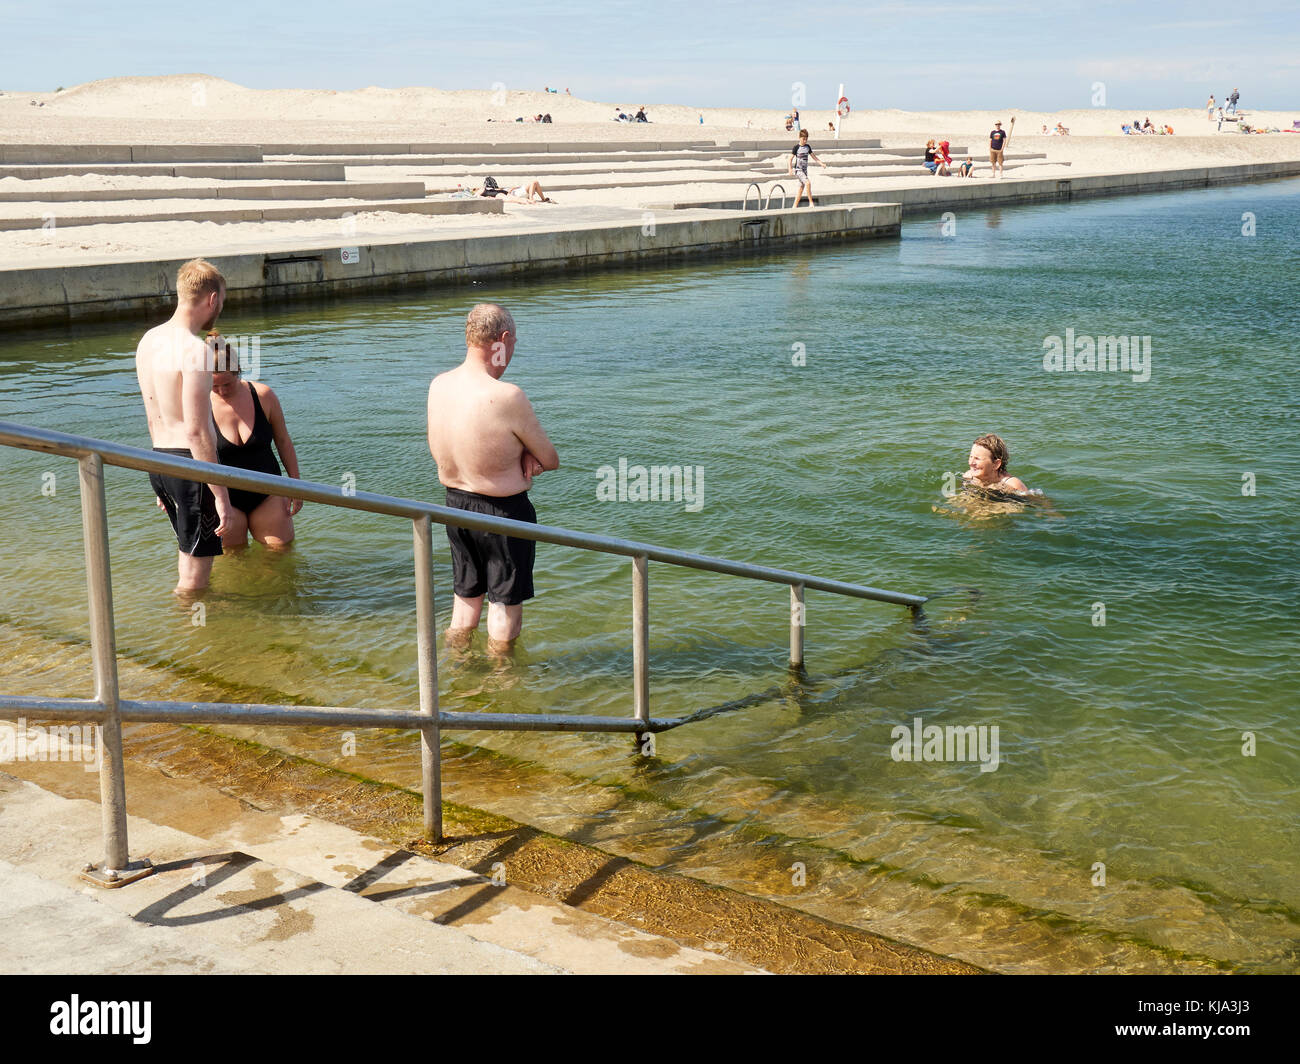 Gente nadando en la piscina de agua salada, abierta Nr. Vorupør, Dinamarca Foto de stock